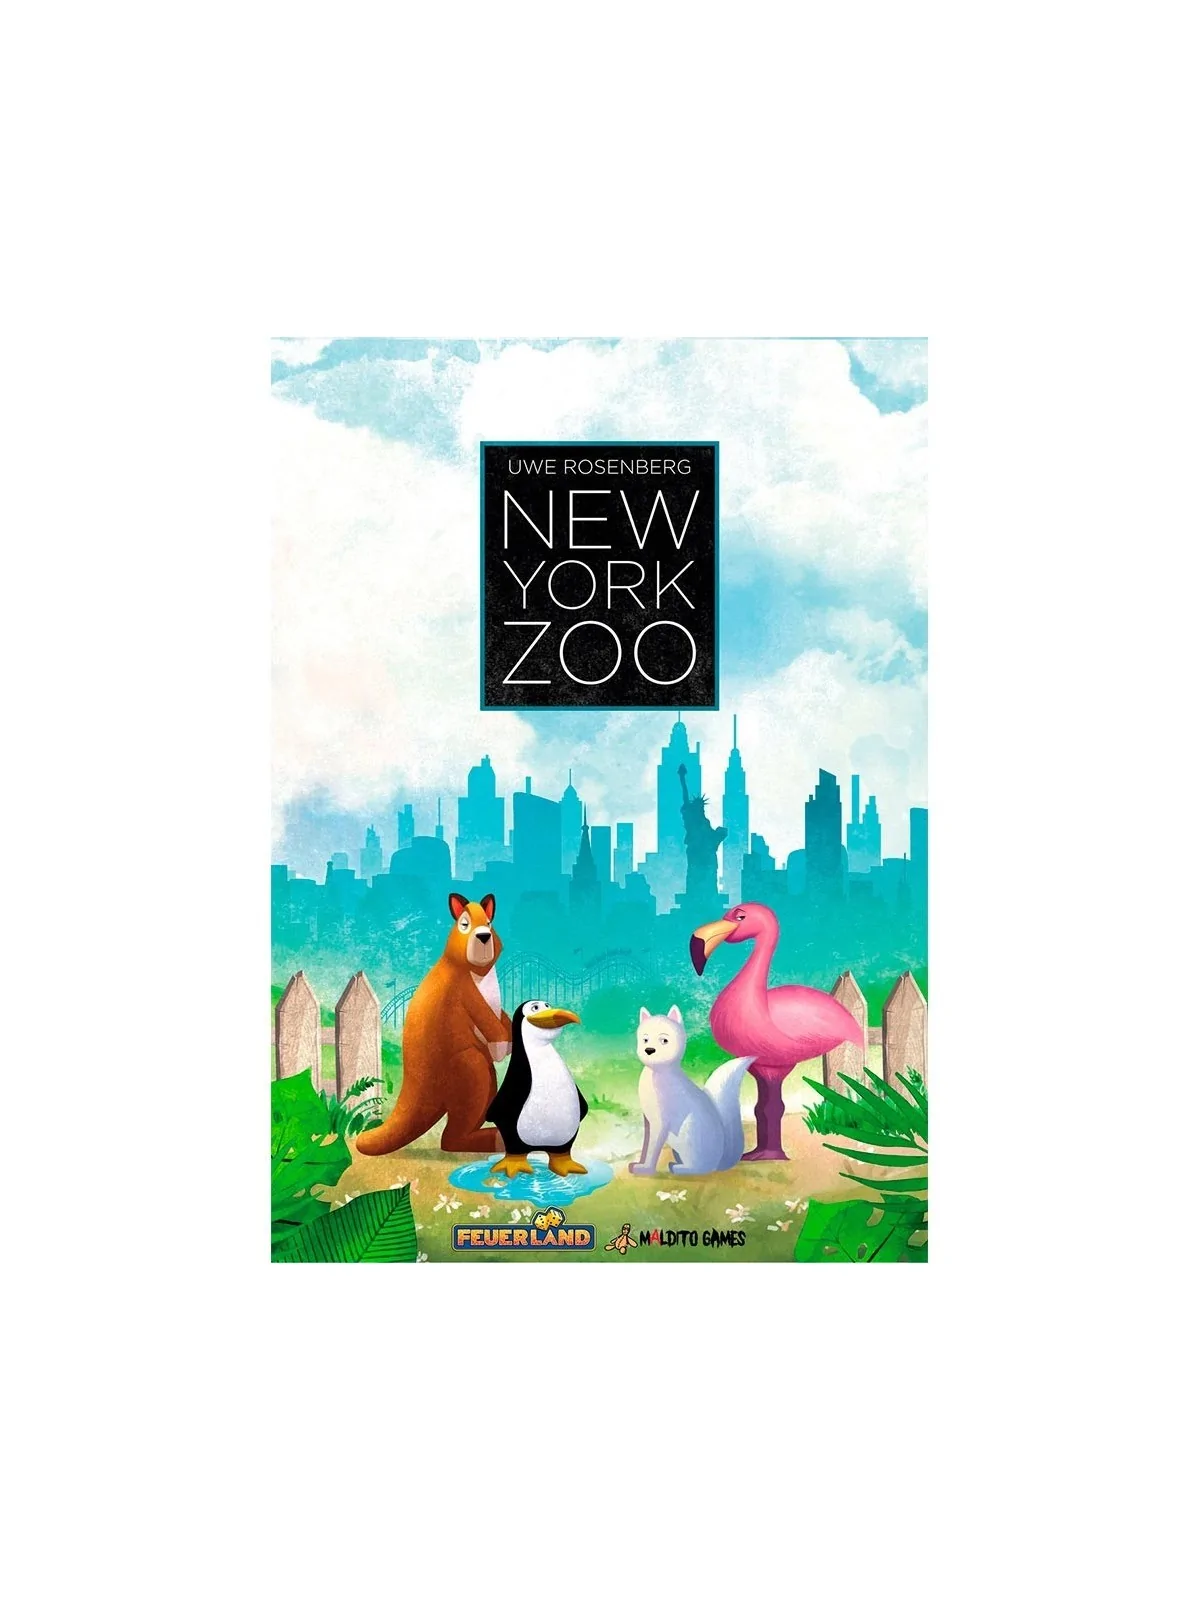 Comprar New York Zoo barato al mejor precio 31,50 € de Maldito Games